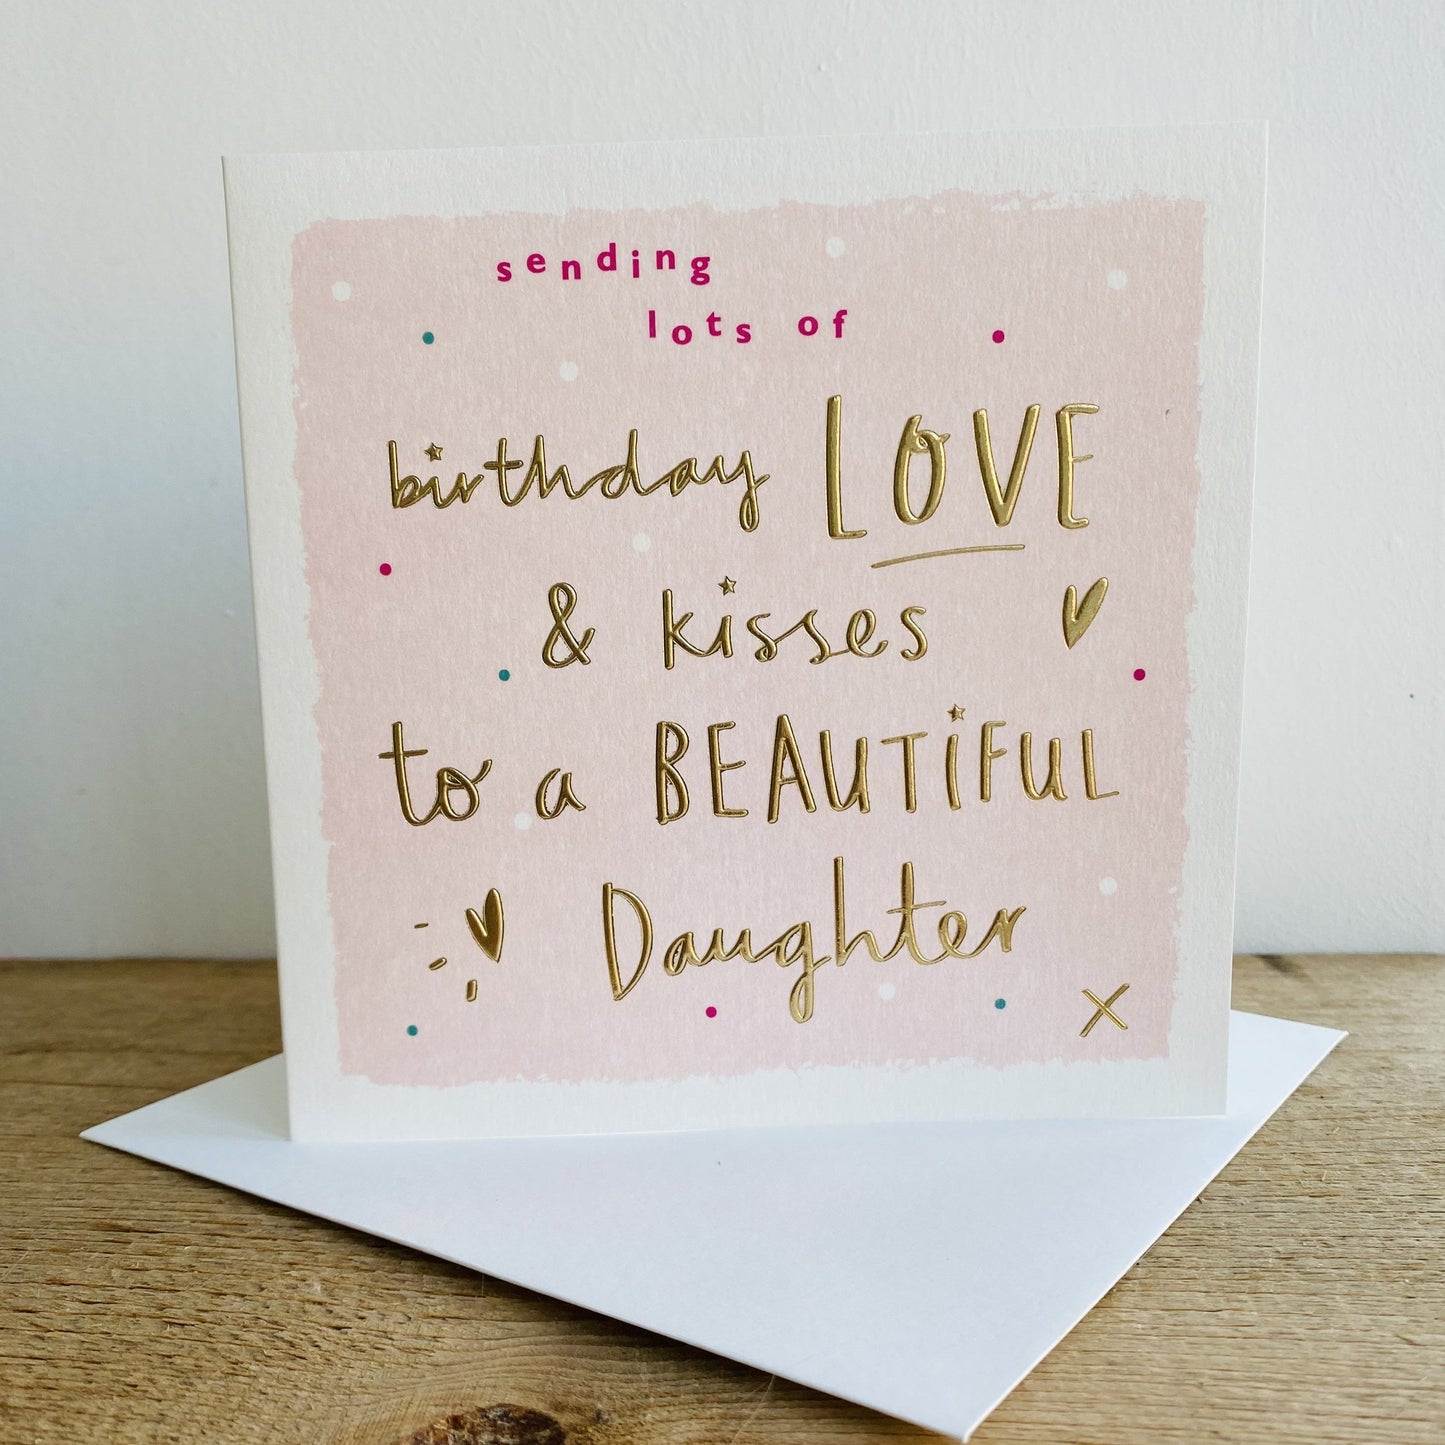 Sherbert Birthday Greetings Card Beautiful Daughter